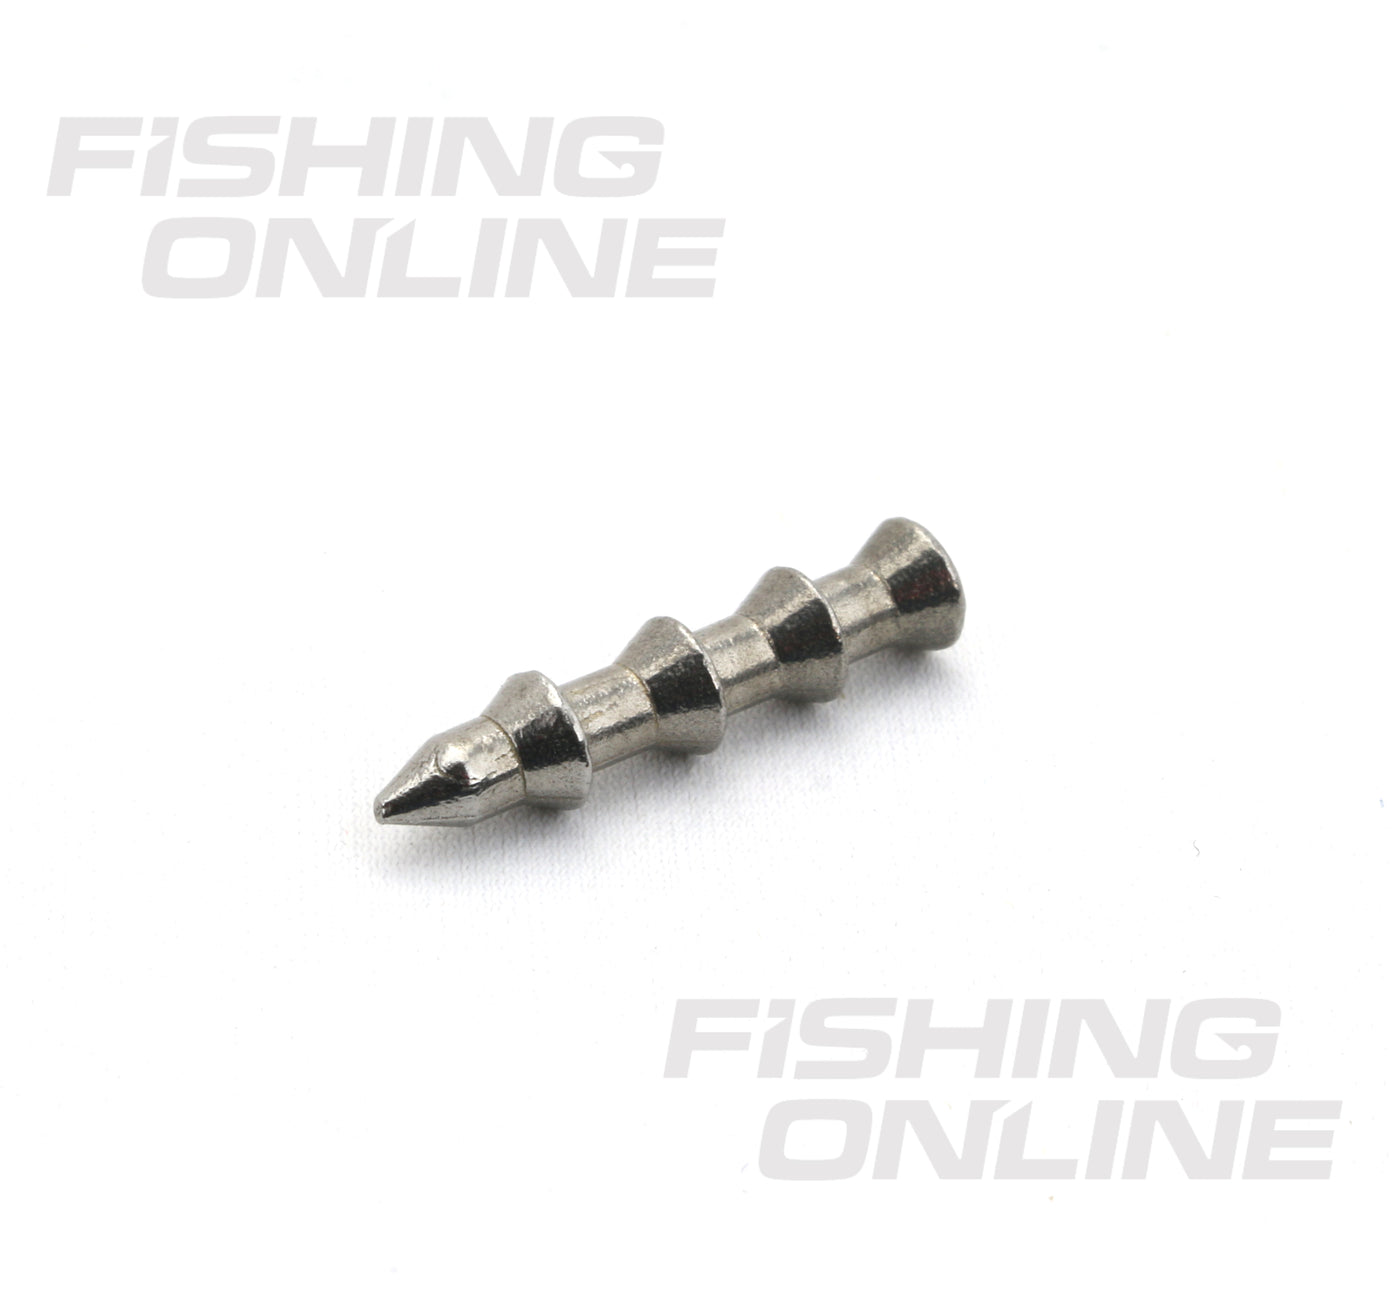 Fishon Tungsten Nail Weights 1/64oz 11pk